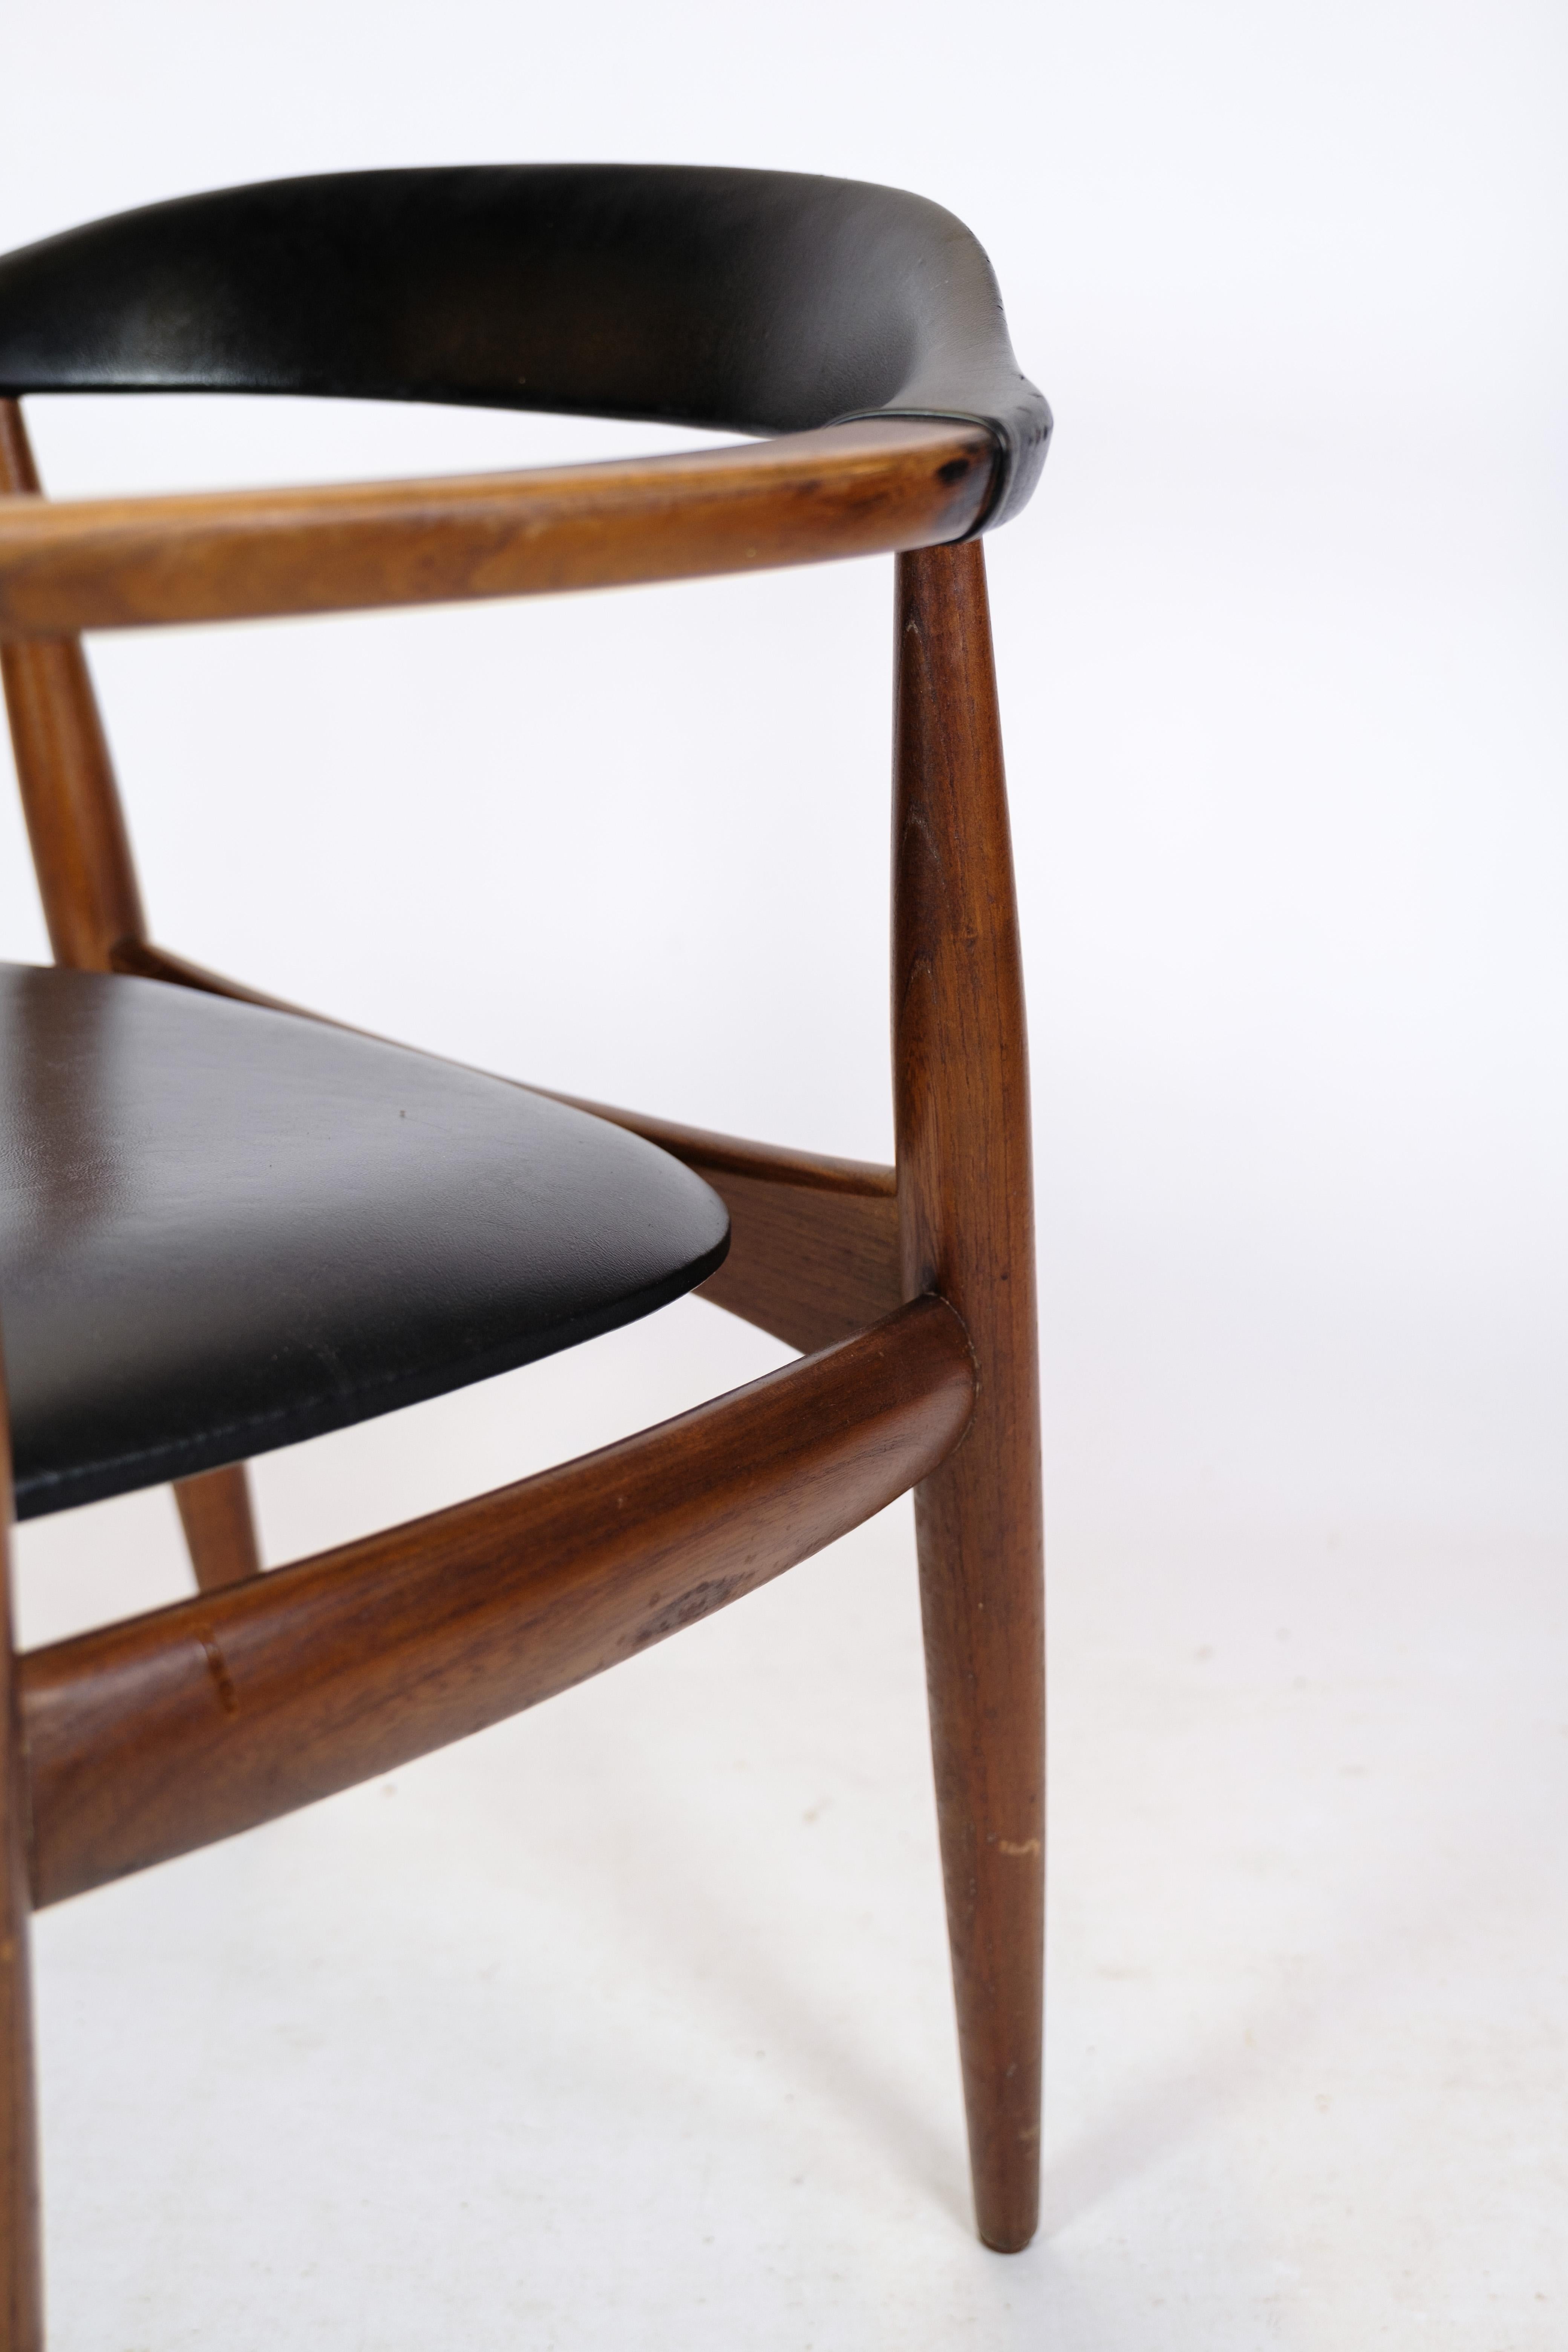 Sessel aus Teakholz und schwarzem Kunstleder, entworfen von Illum Wikkelsø für Niels Eilersen um die 1960er Jahre.
Maße in cm: H:66 B:62 T:46 SH:45